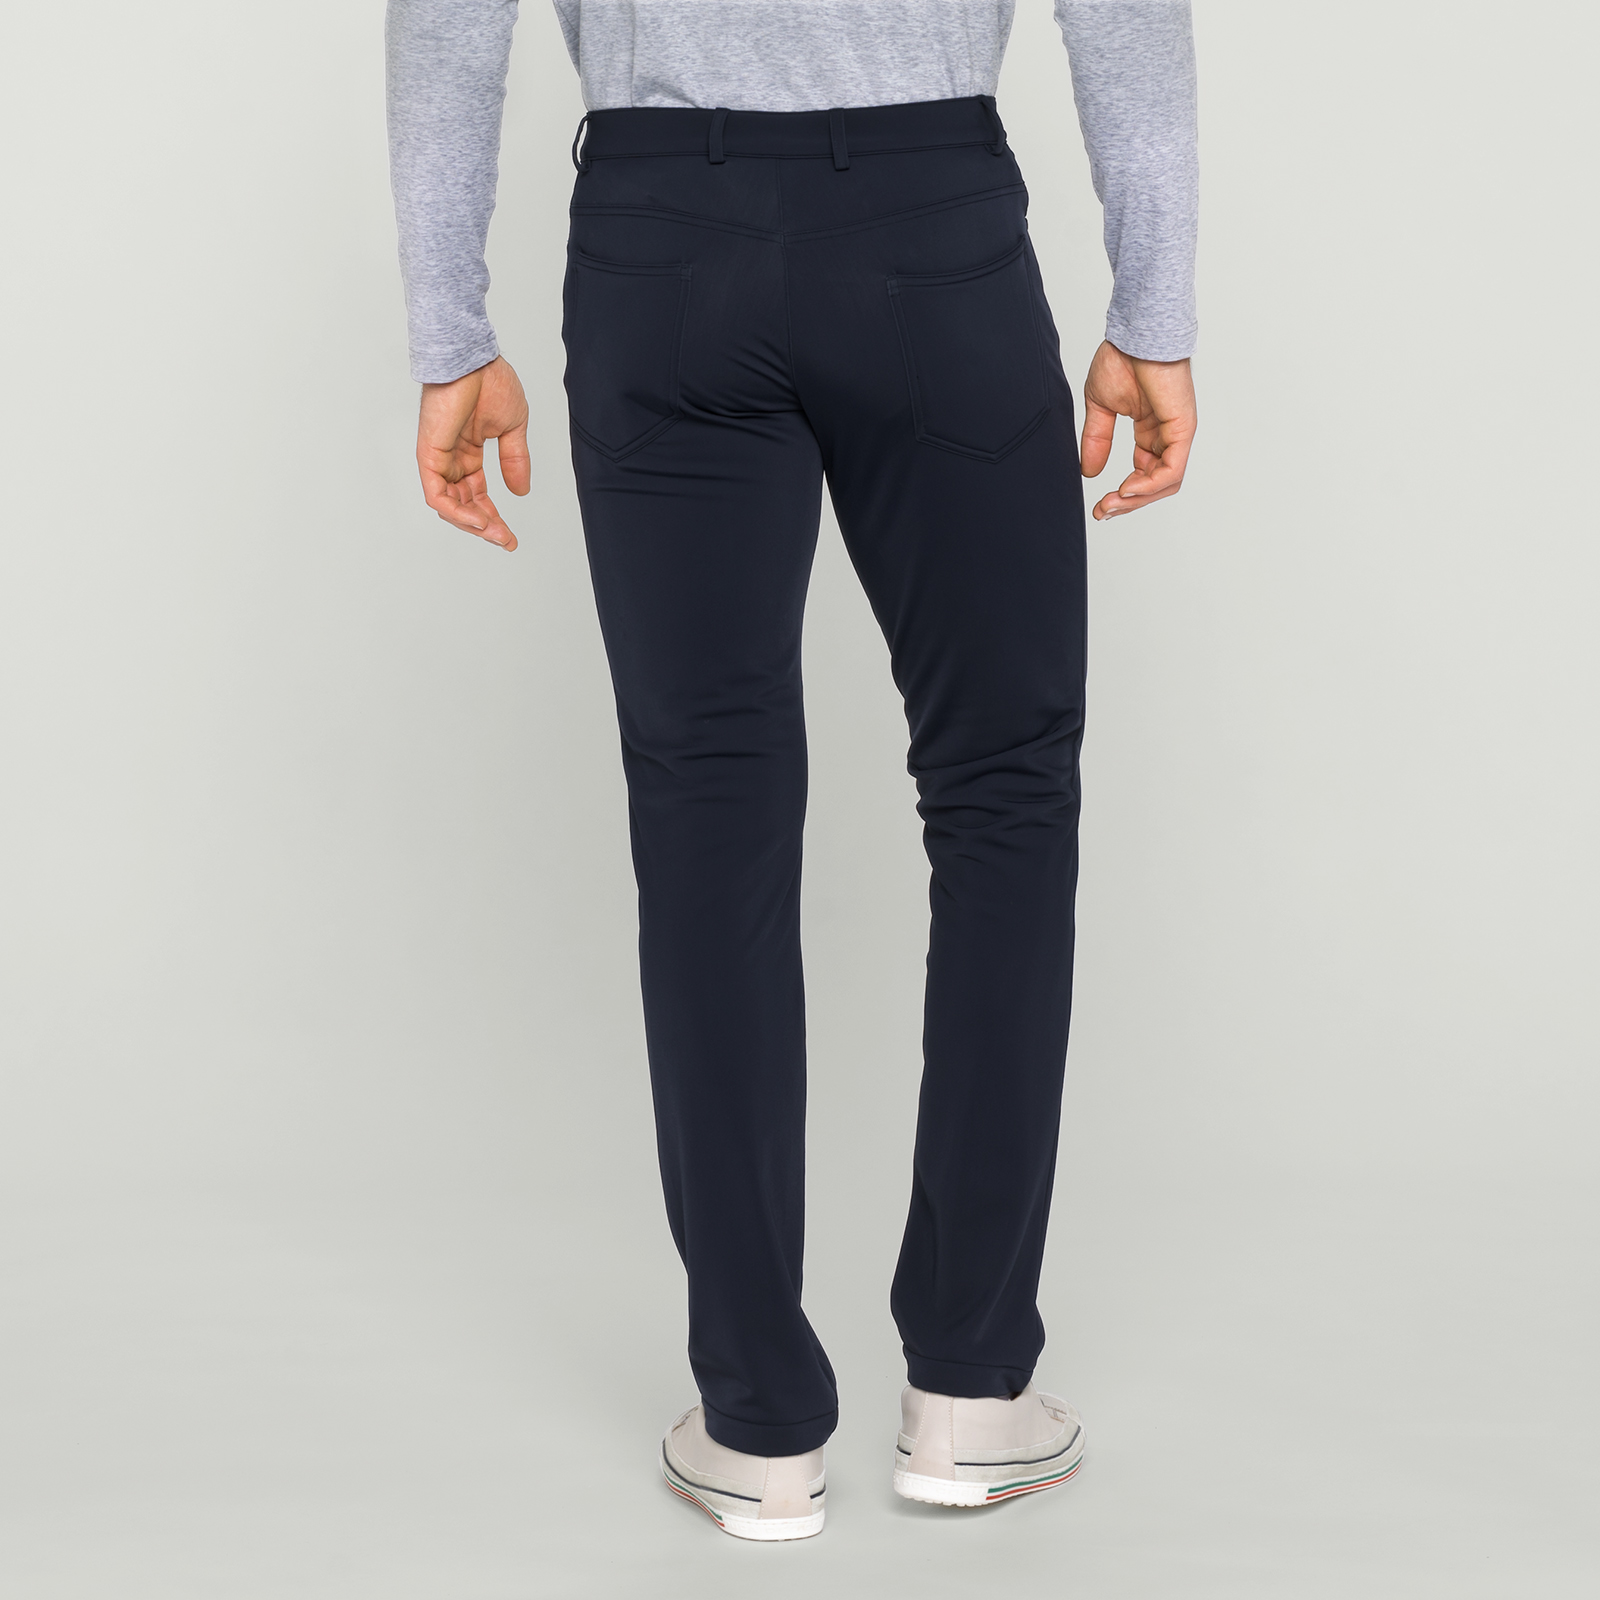 Pantalon de golf confortable pour hommes